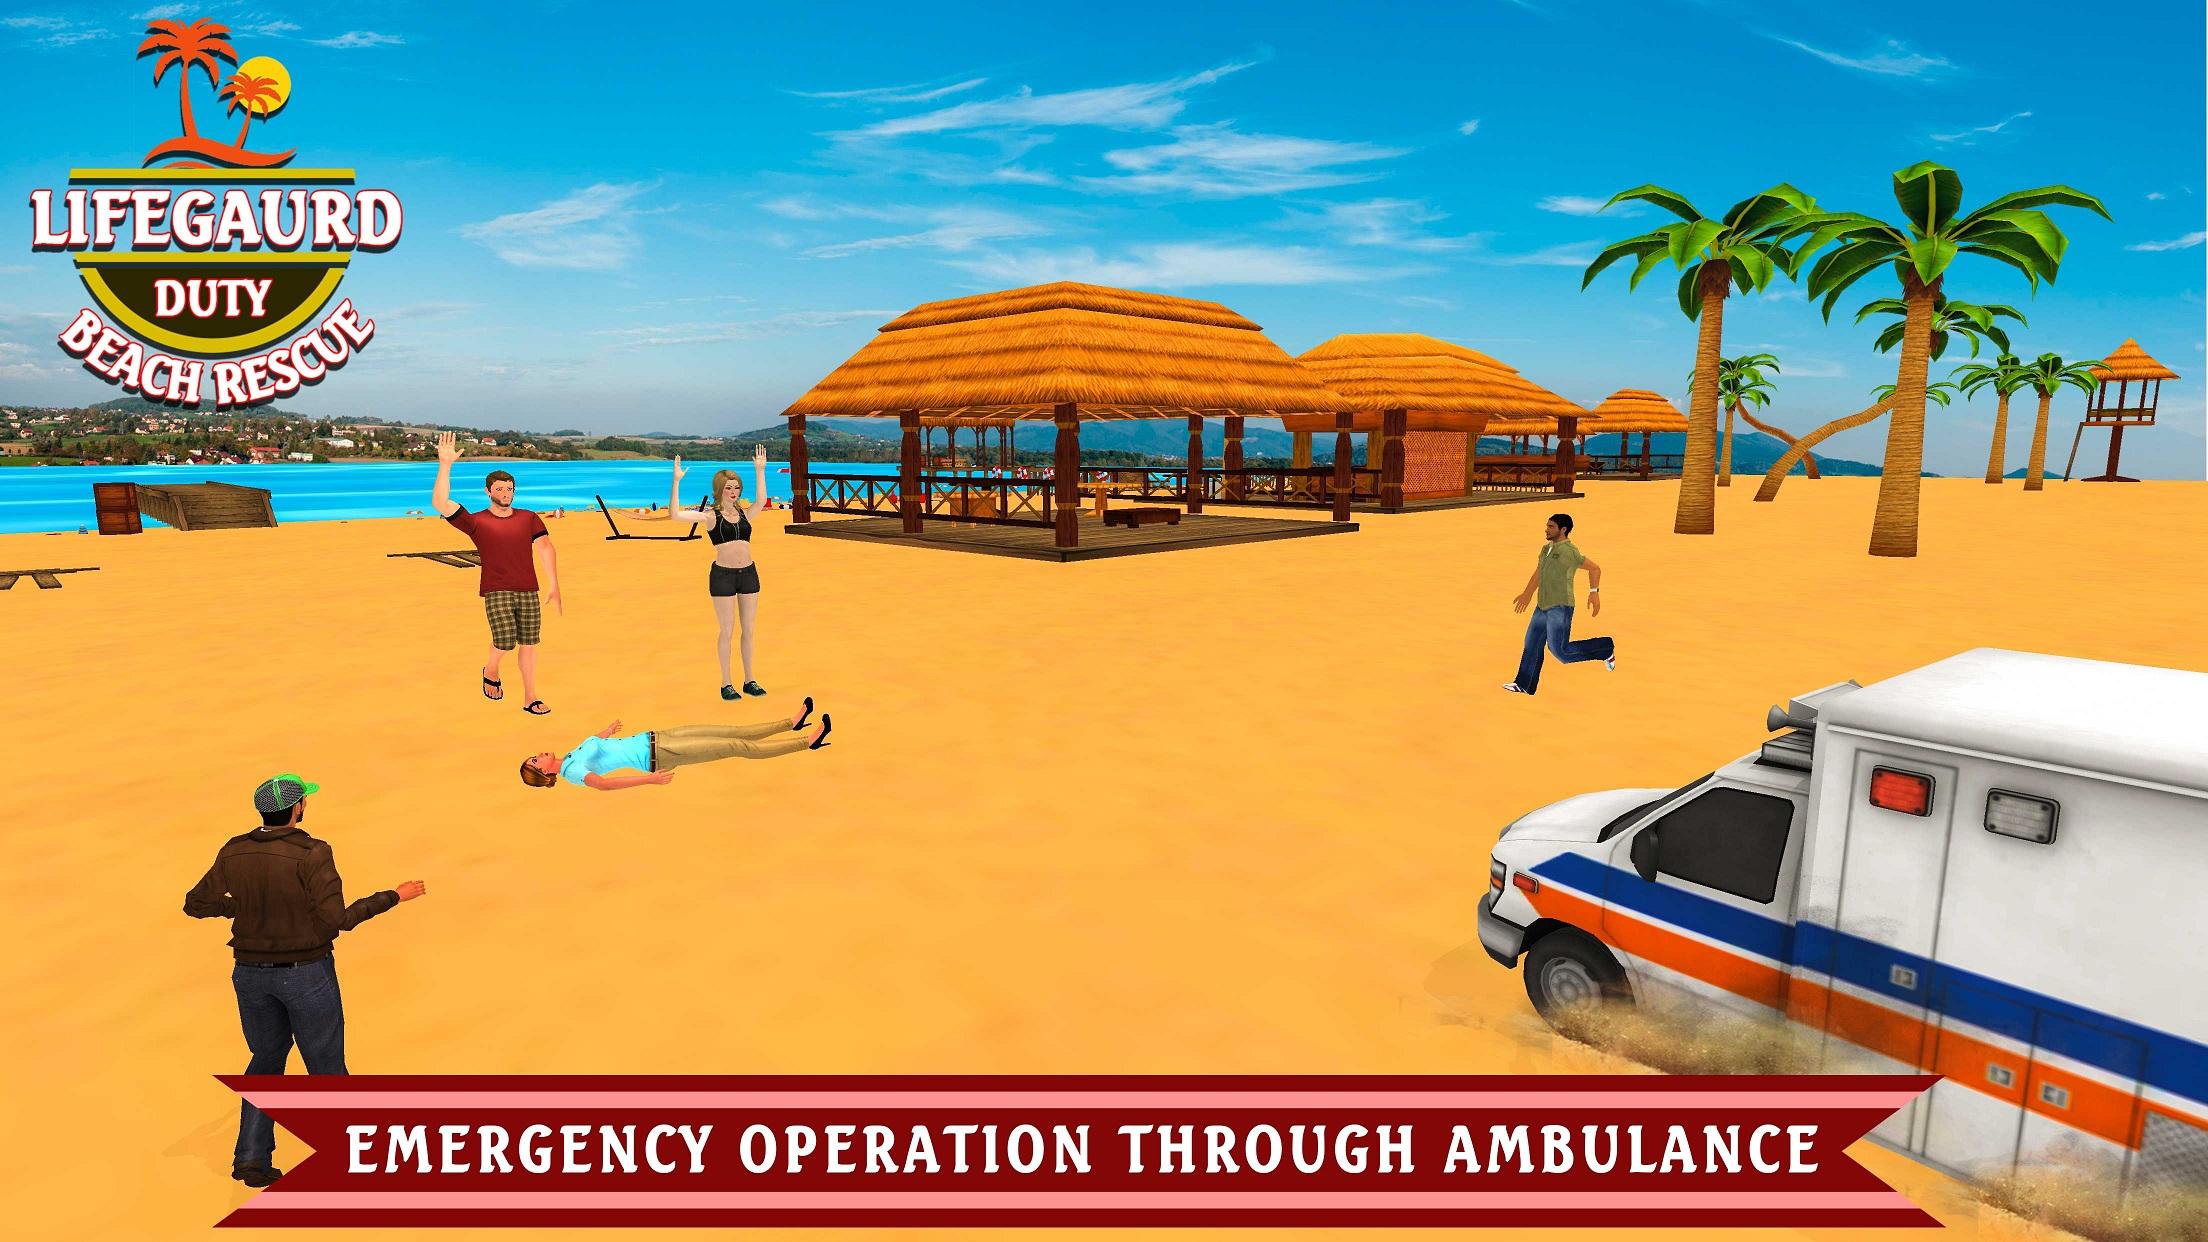 Lifeguard Beach Rescue Duty: Coastguard Rescue team